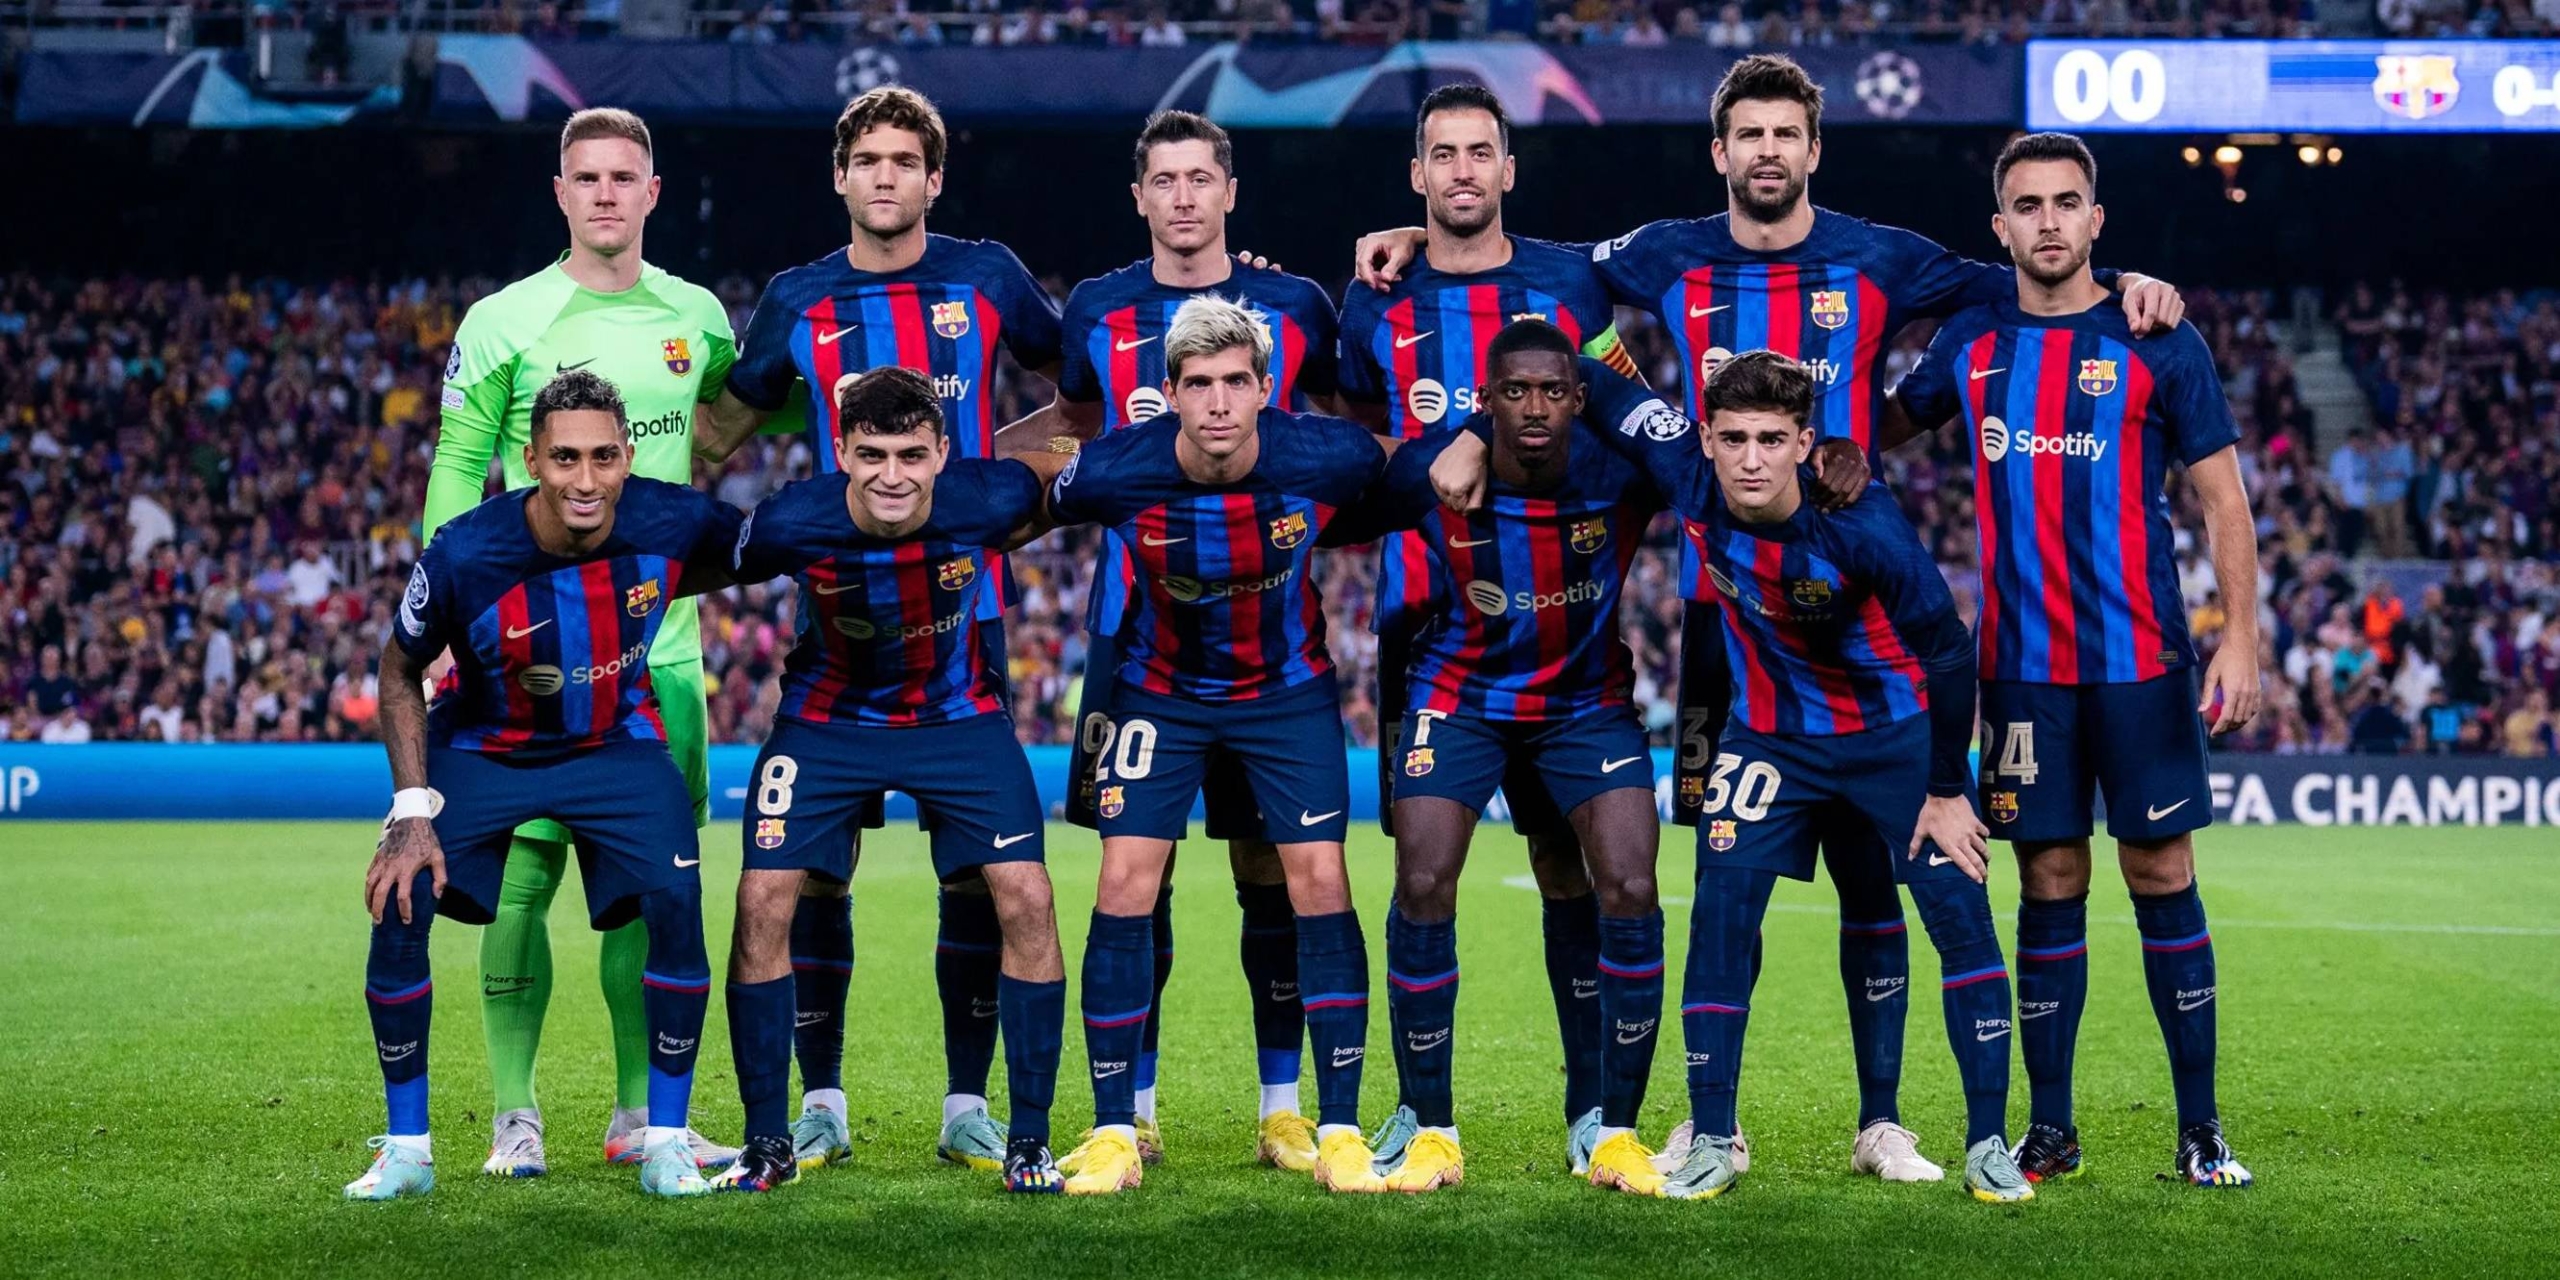 L'onze titular del Barça contra l'Inter al Camp Nou | FC Barcelona